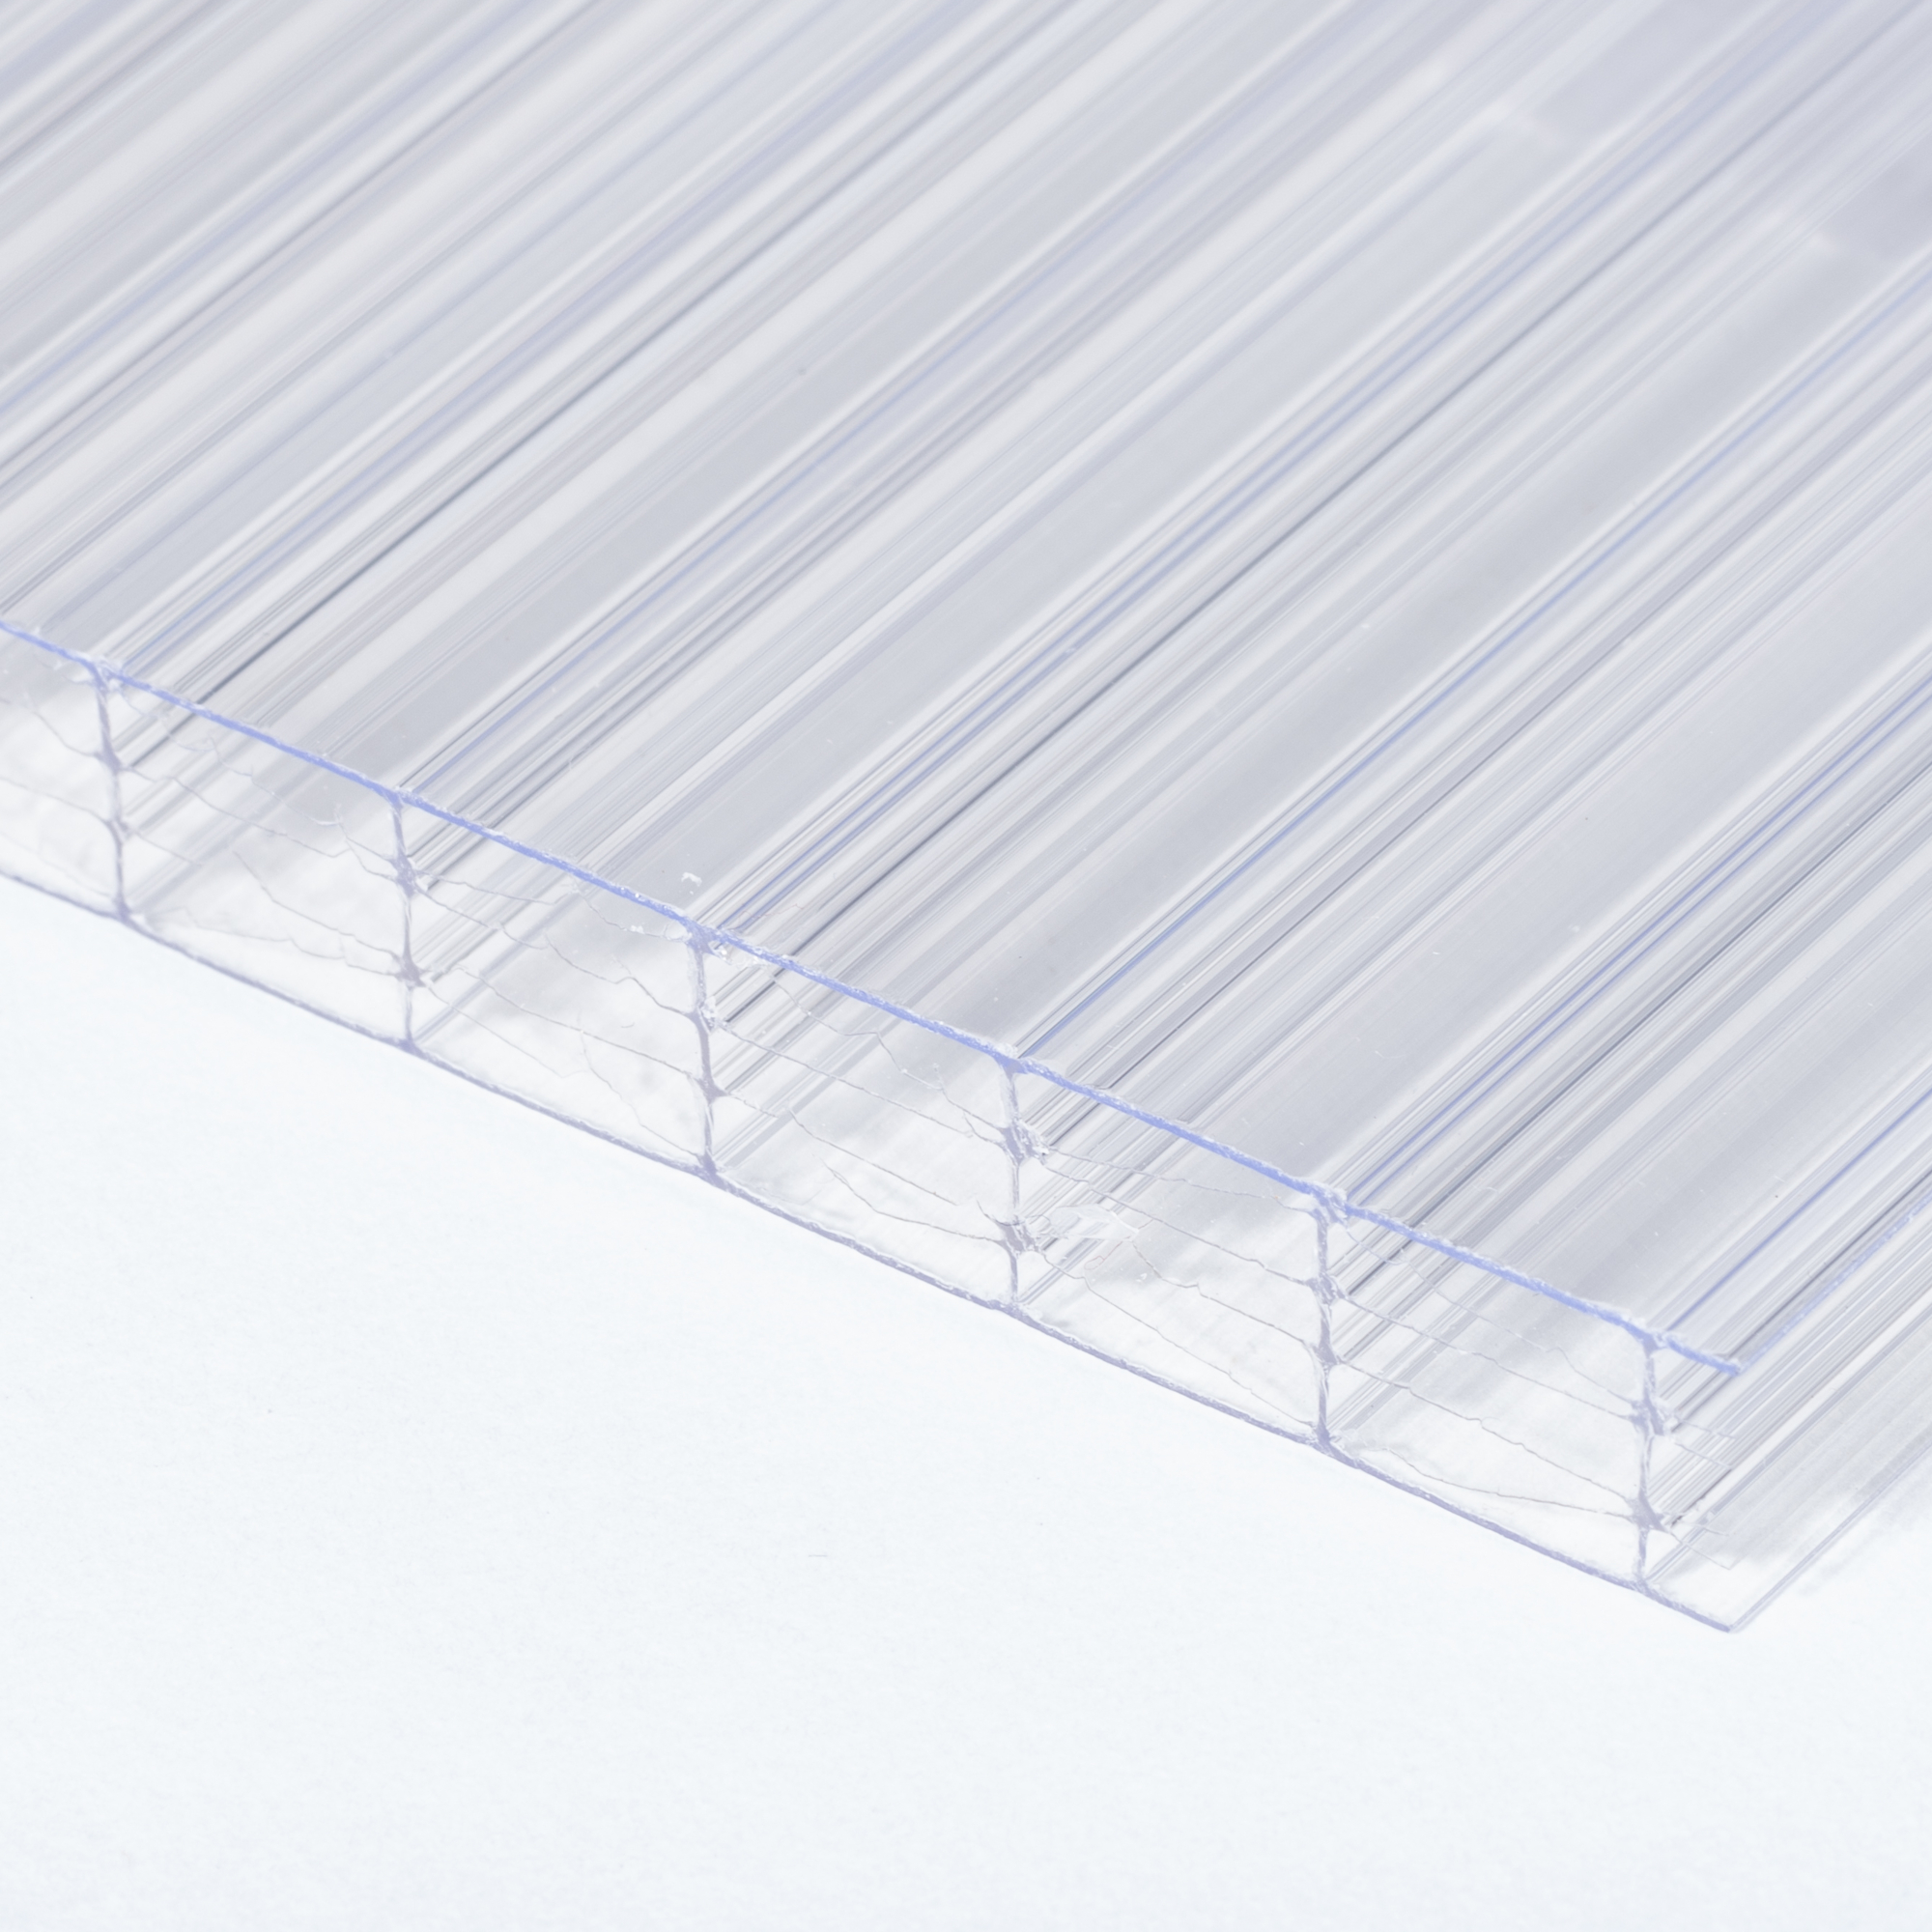 Polykarbonátová dutinková deska MULTICLEAR 10 STRONG 6W čirá s UV ochranou 1500×7000 mm ARLA PLAST